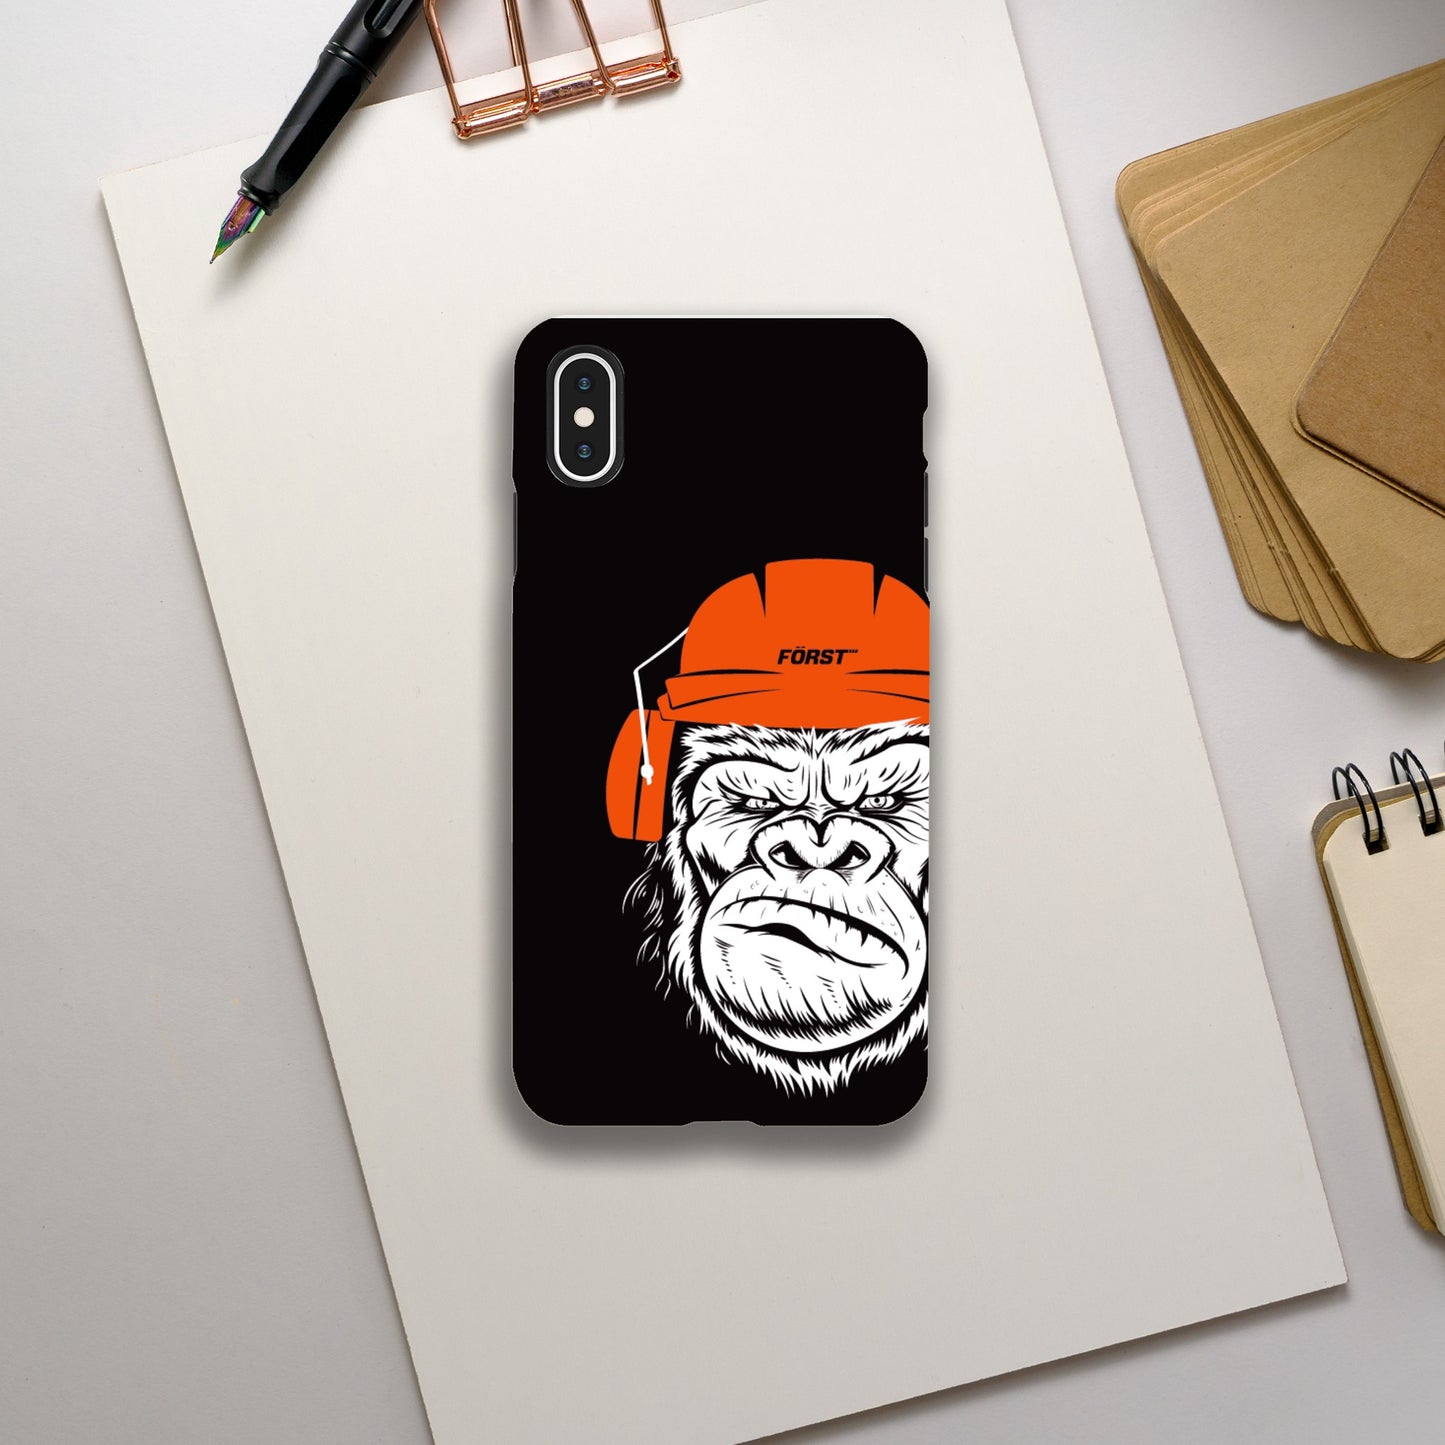 Gorilla iPhone tough cases